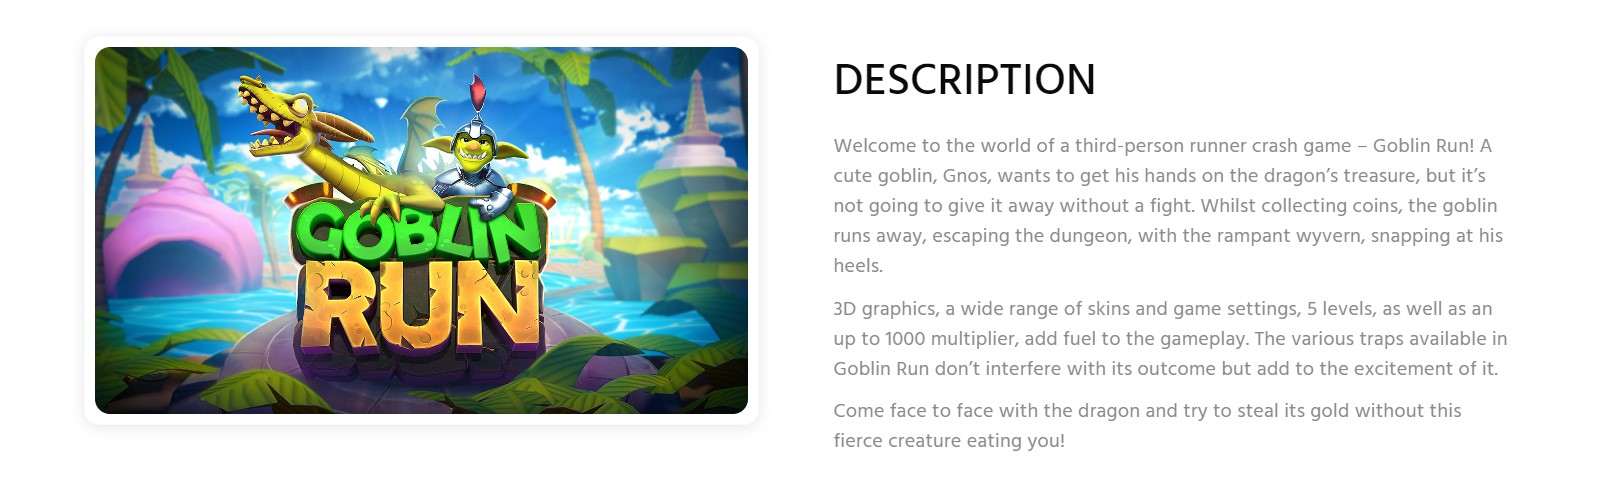 Descrizione del gioco Goblin Run